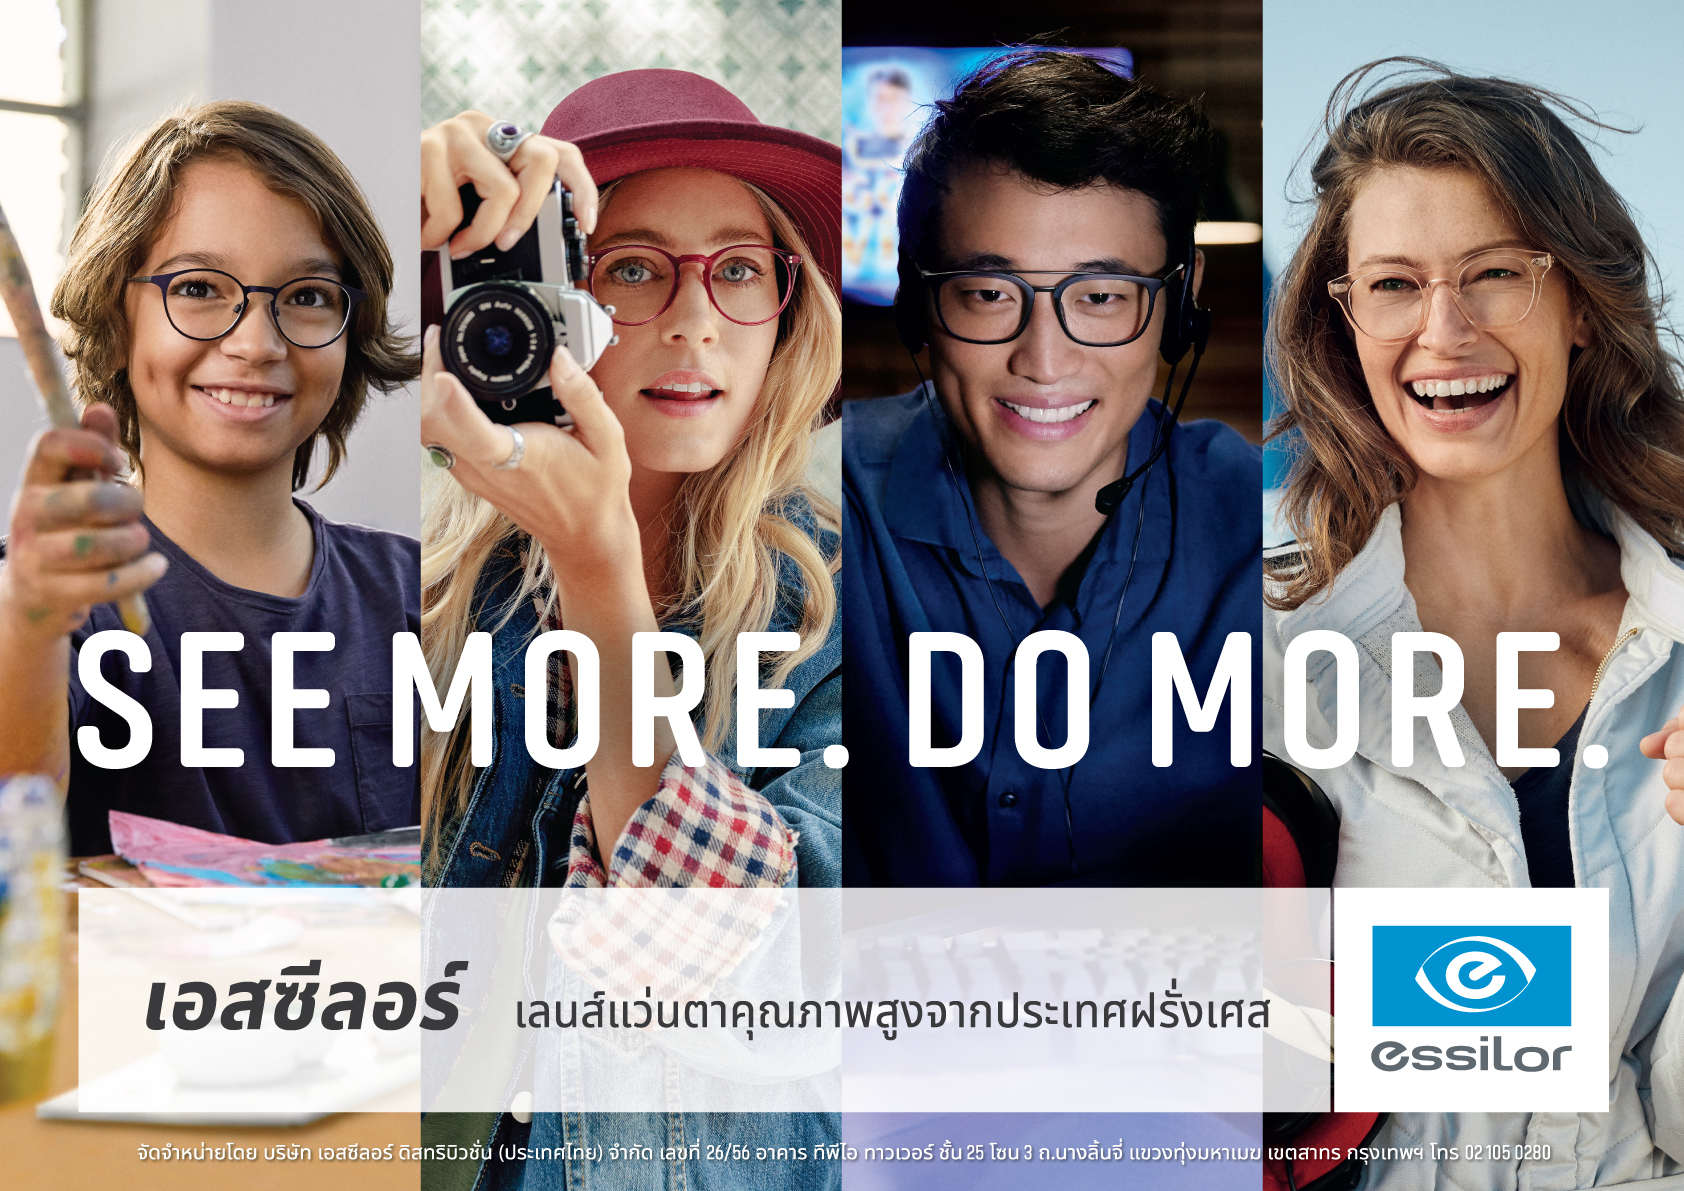 เอสซีลอร์ชูนวัตกรรมเลนส์ระดับโลก “Crizal” และ “Optifog” ใส่แว่นตาช่วยลดการสัมผัสเพื่อสุขอนามัยของคนไทย